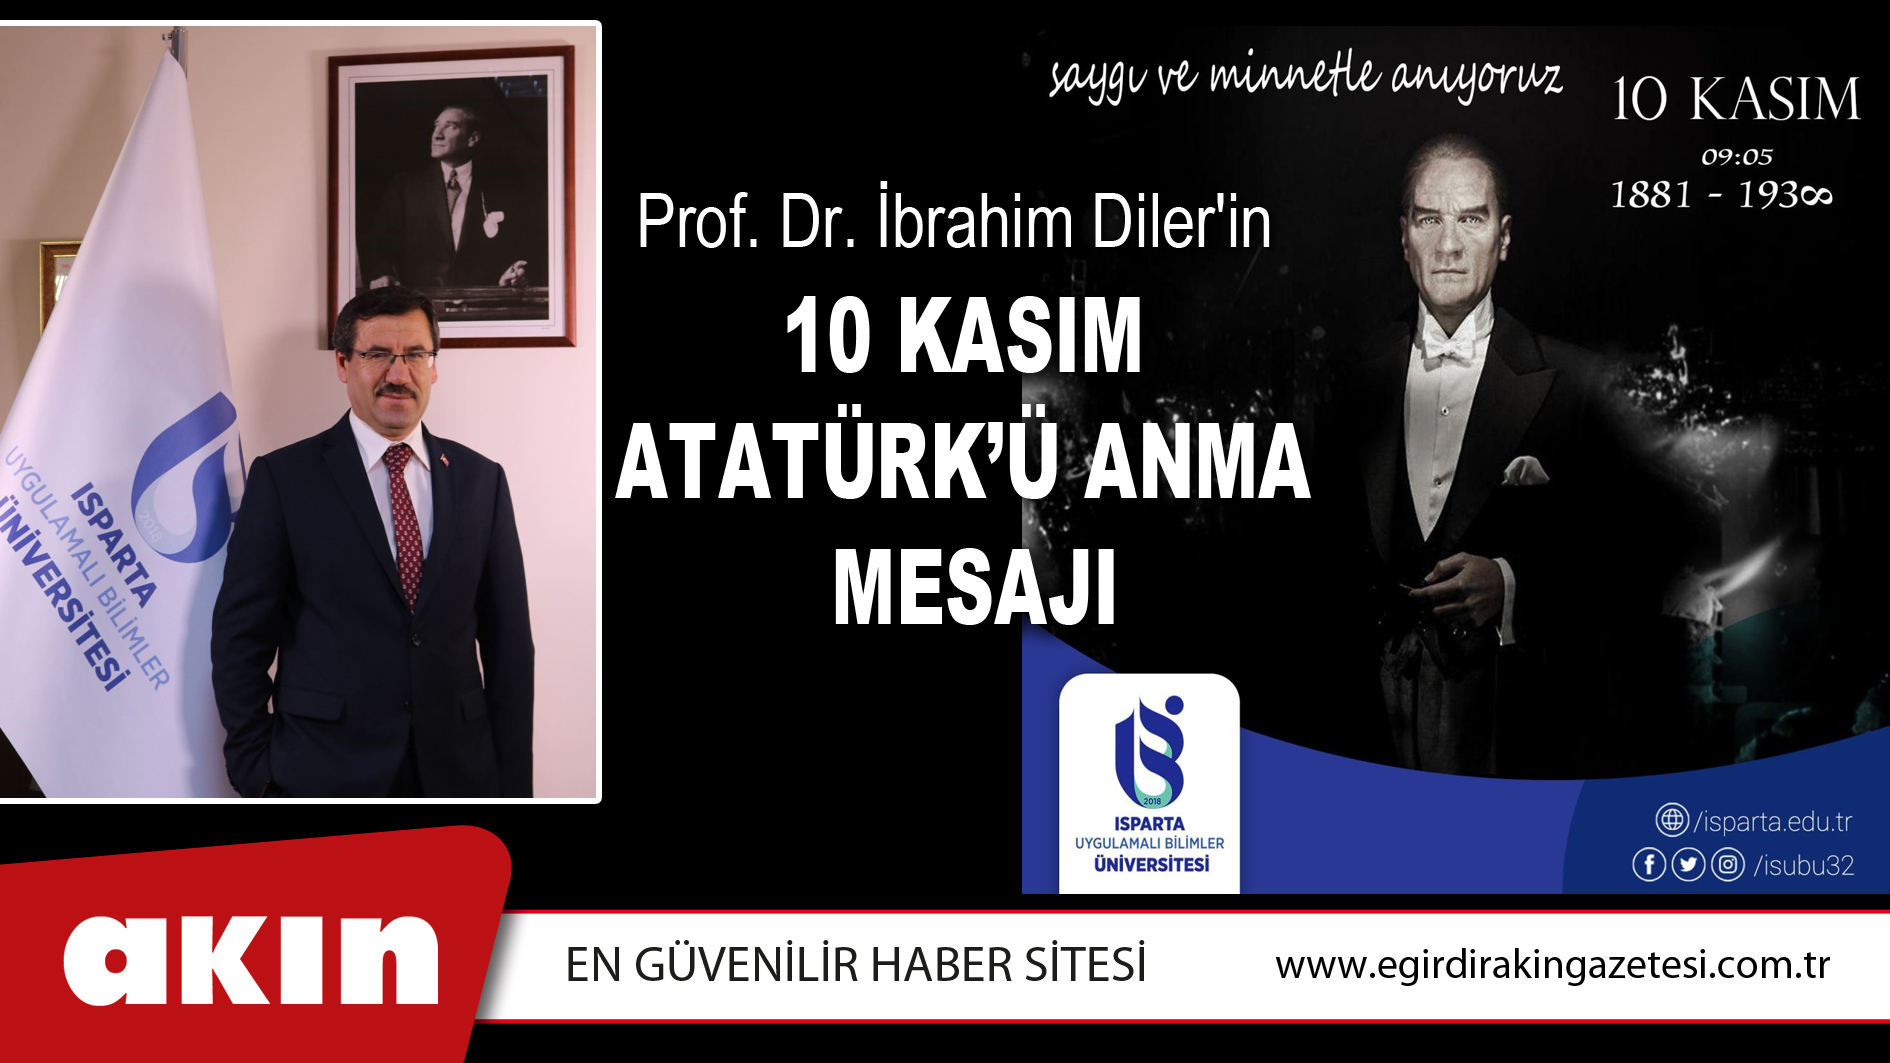 eğirdir haber,akın gazetesi,egirdir haberler,son dakika,Prof. Dr. İbrahim Diler'in 10 Kasım Mesajı